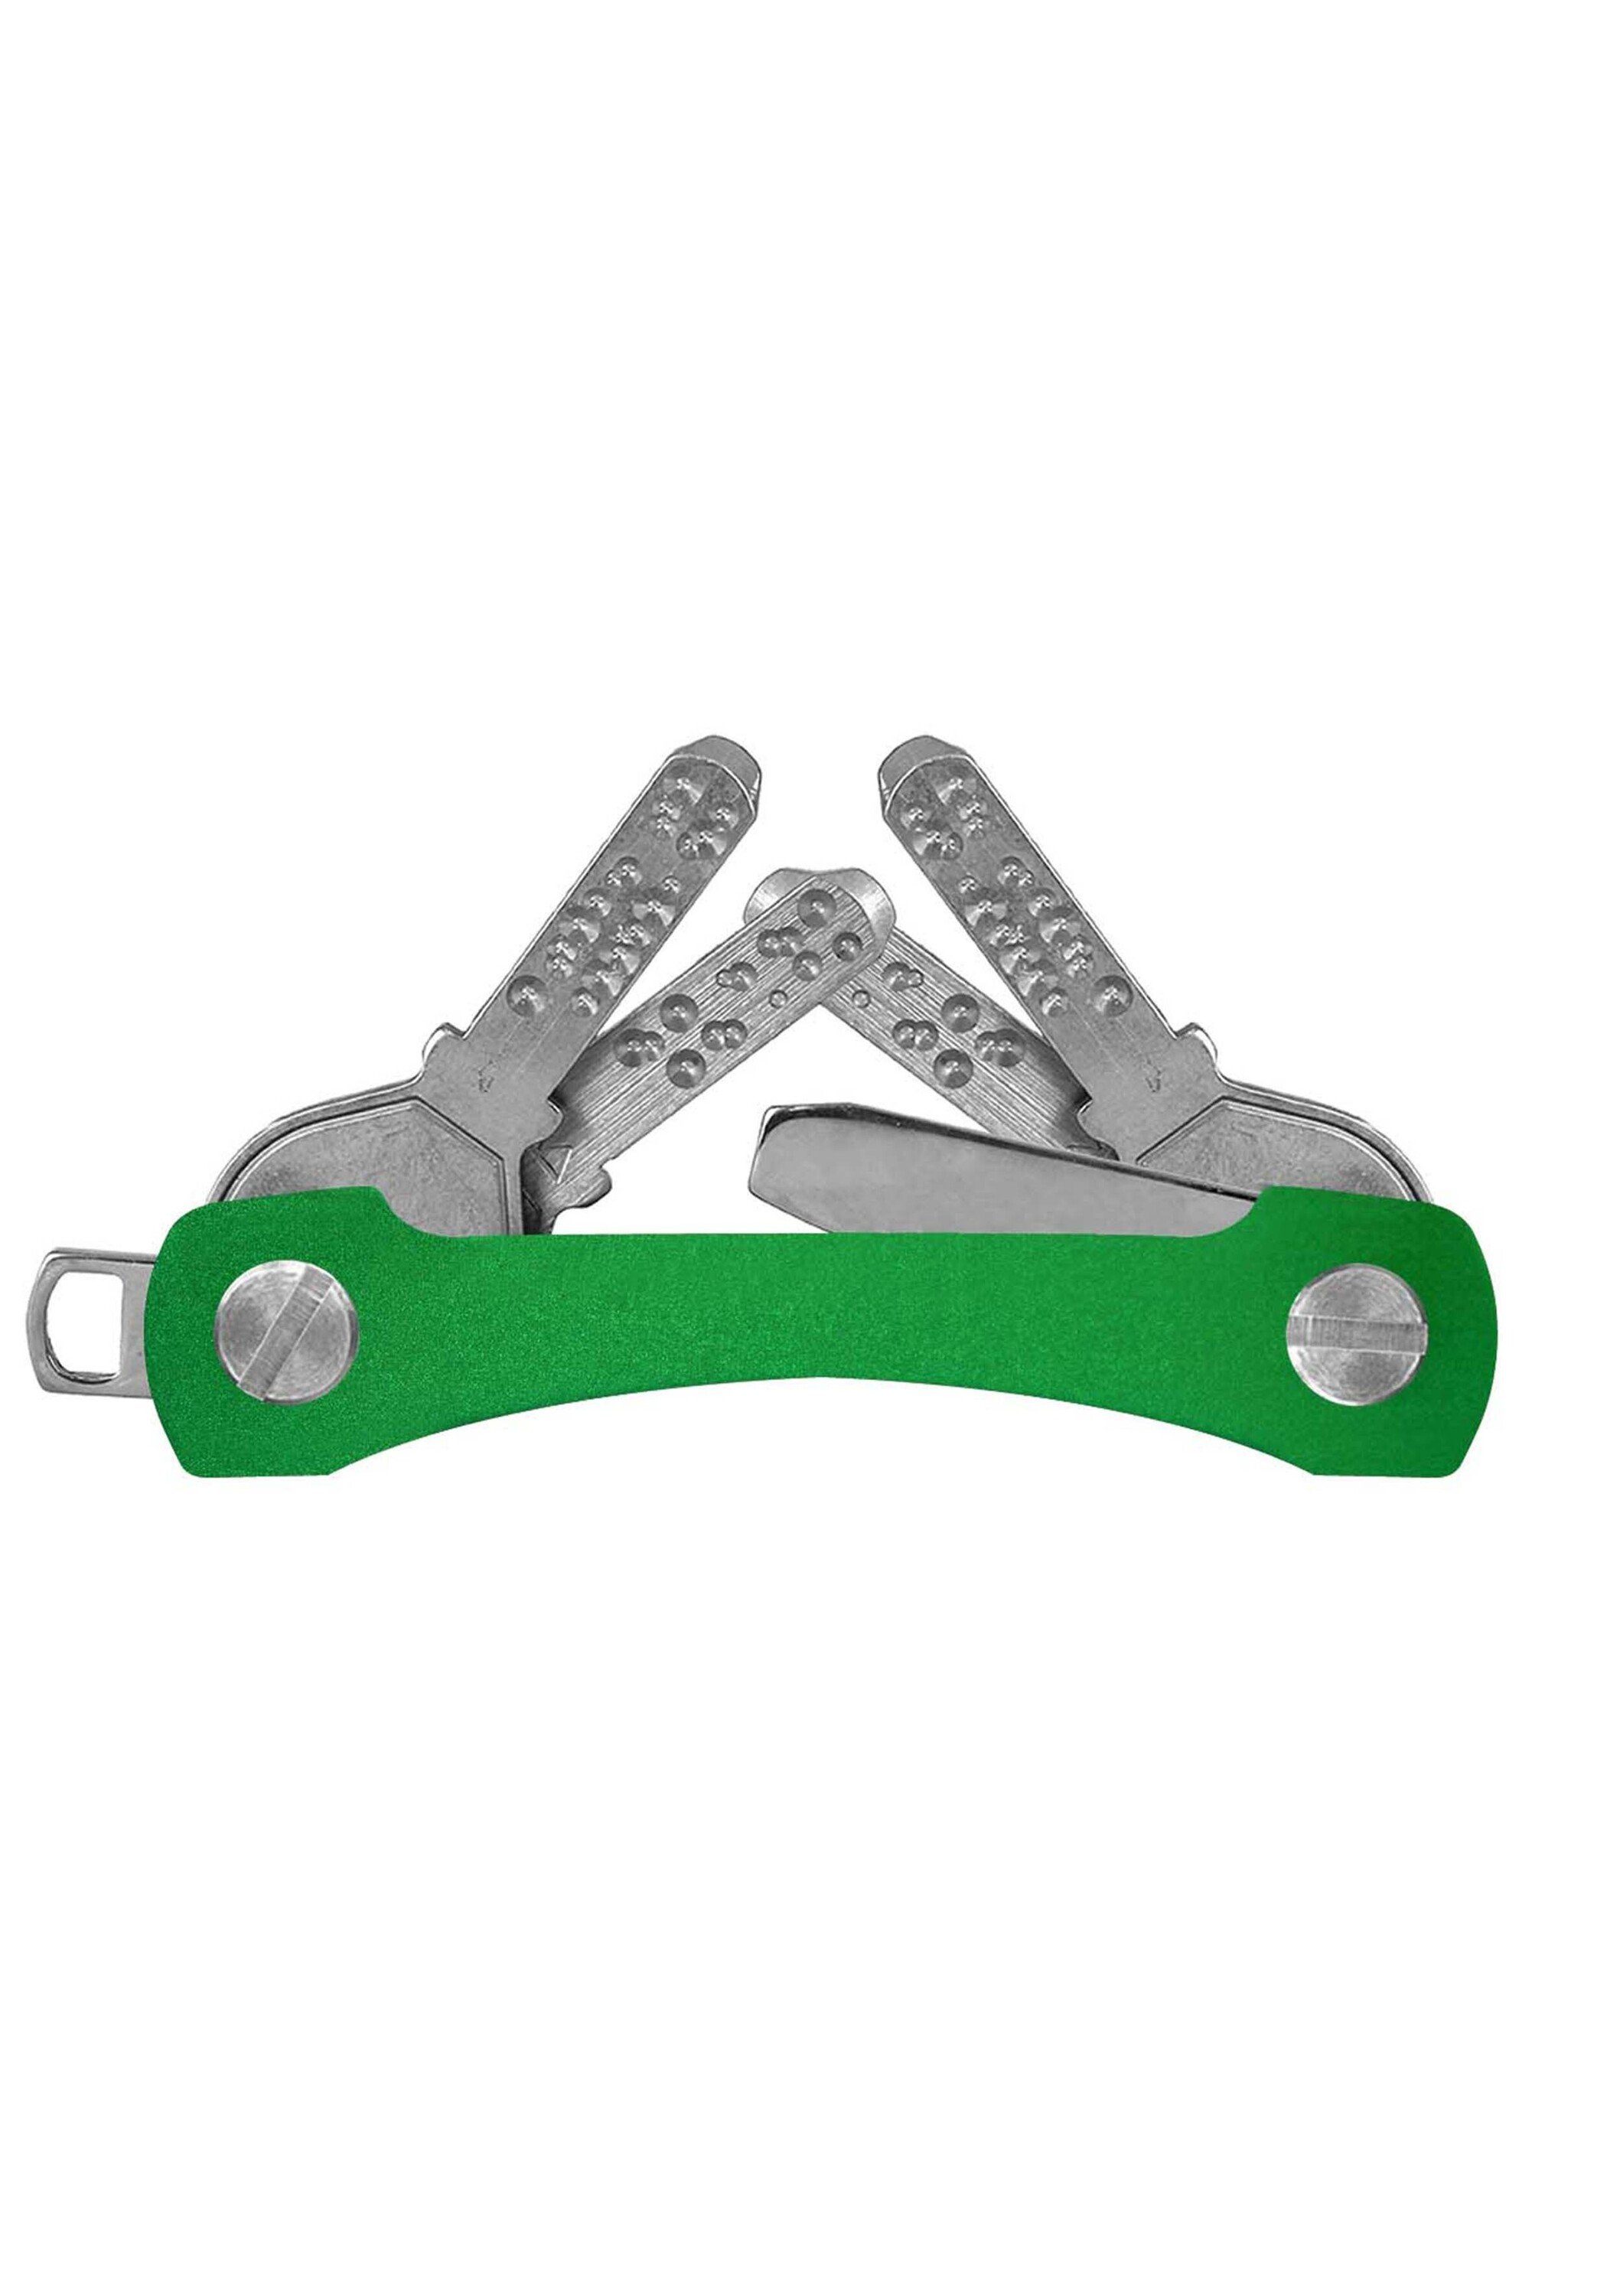 Schlüsselanhänger keycabins grün Aluminium made SWISS S2,